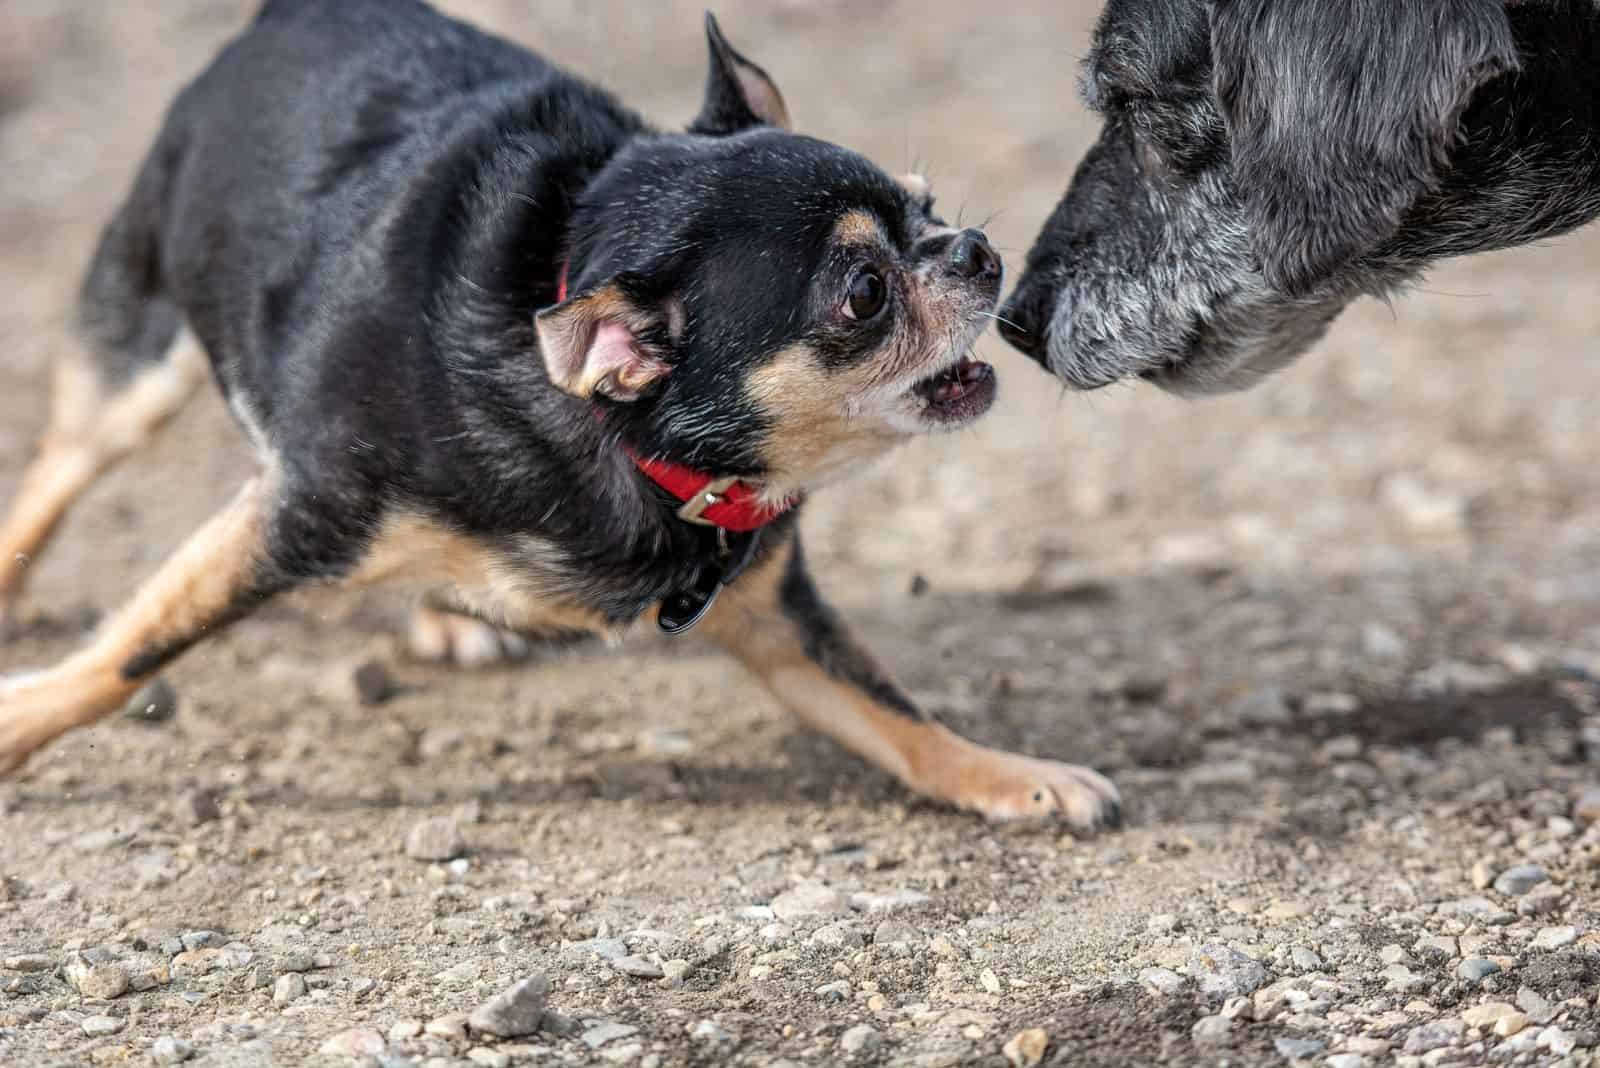 vicious chihuahua attacking an older bigger dog outdoors